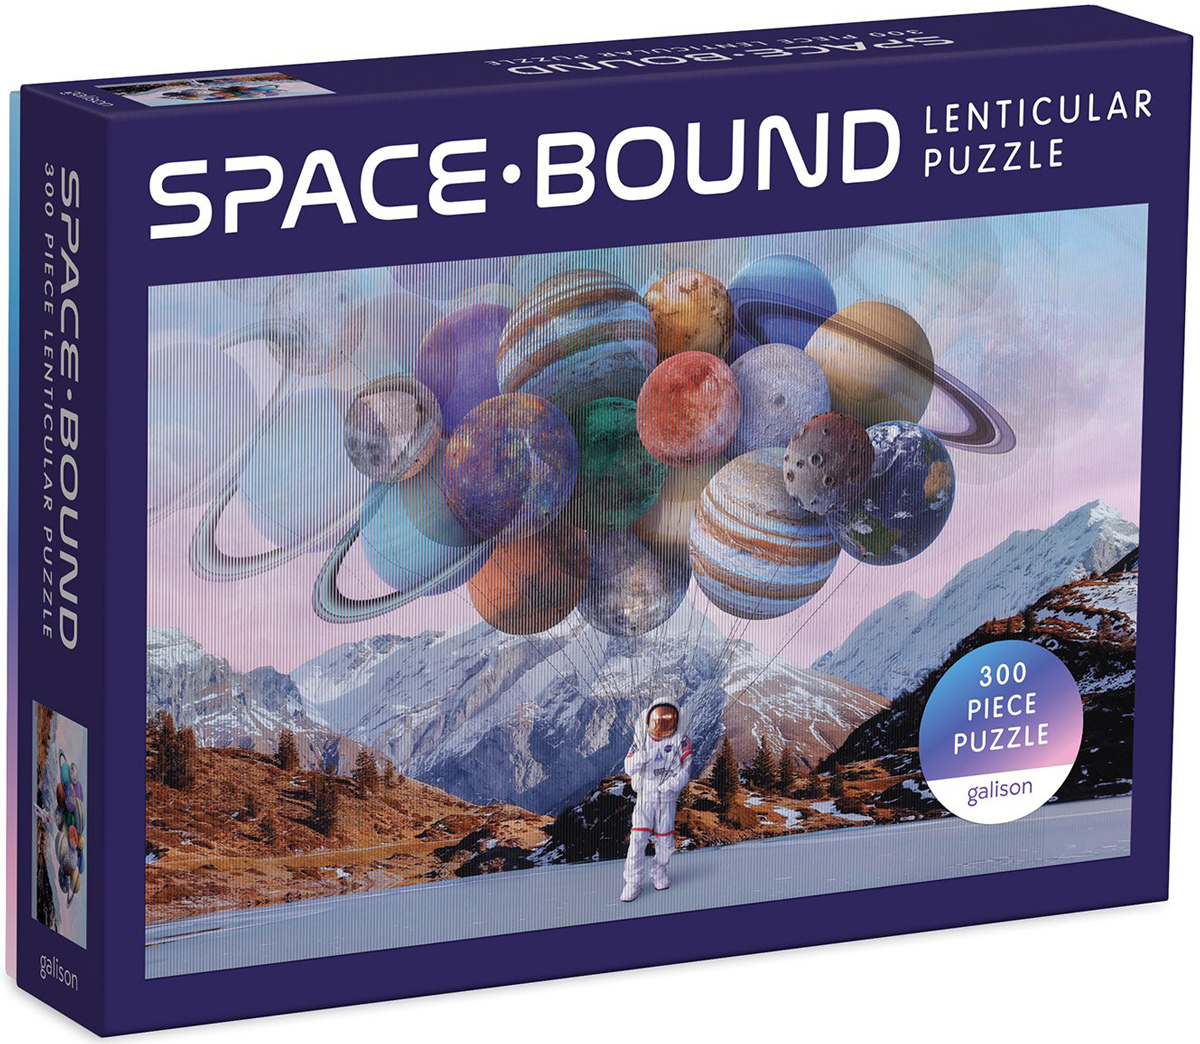 Space Bound Lenticular Puzzle